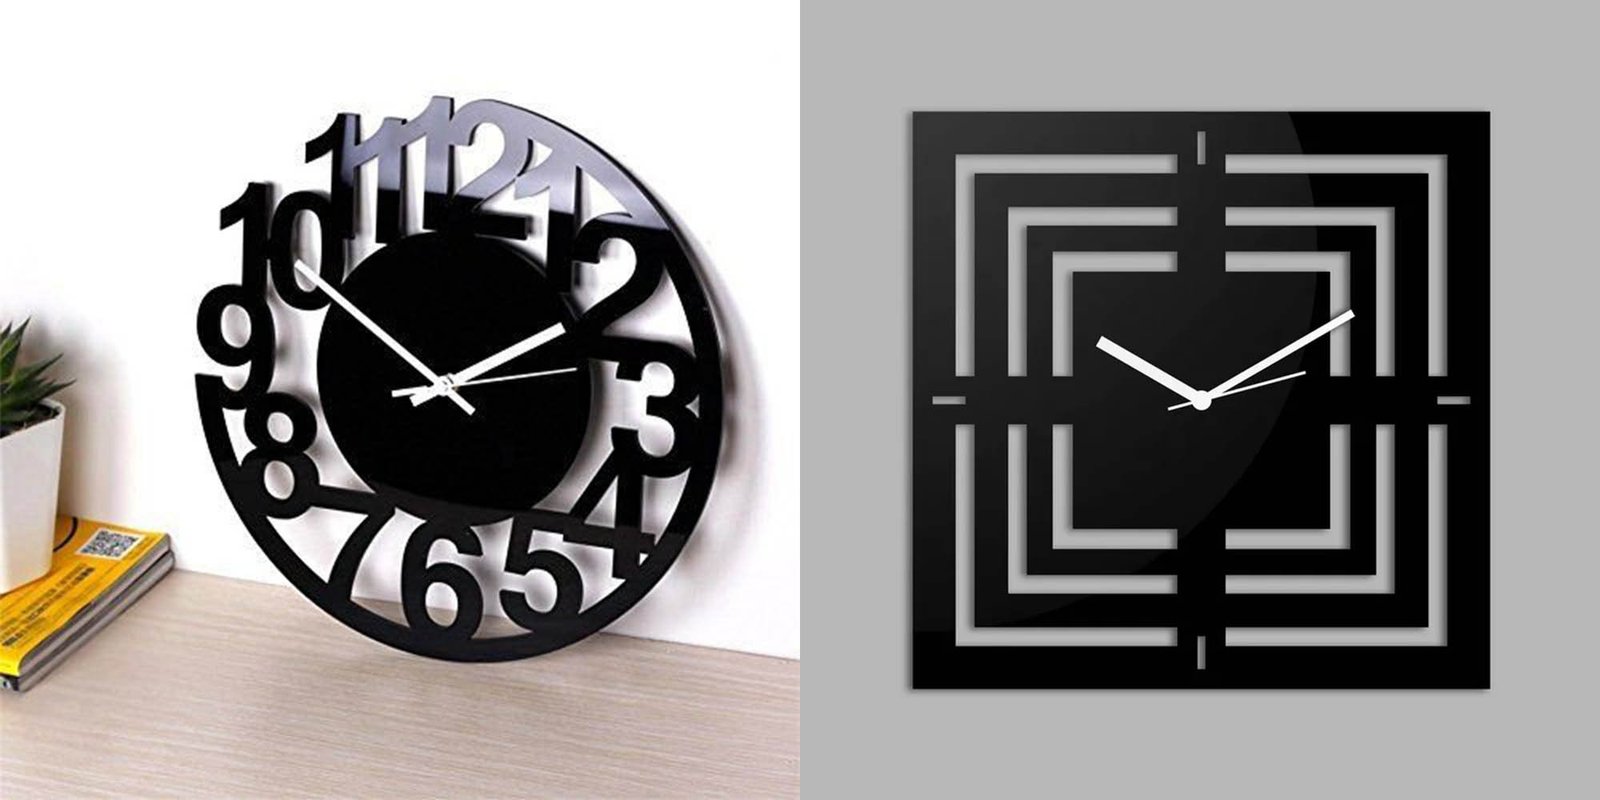 Acrylic clocks from acrylic sheets